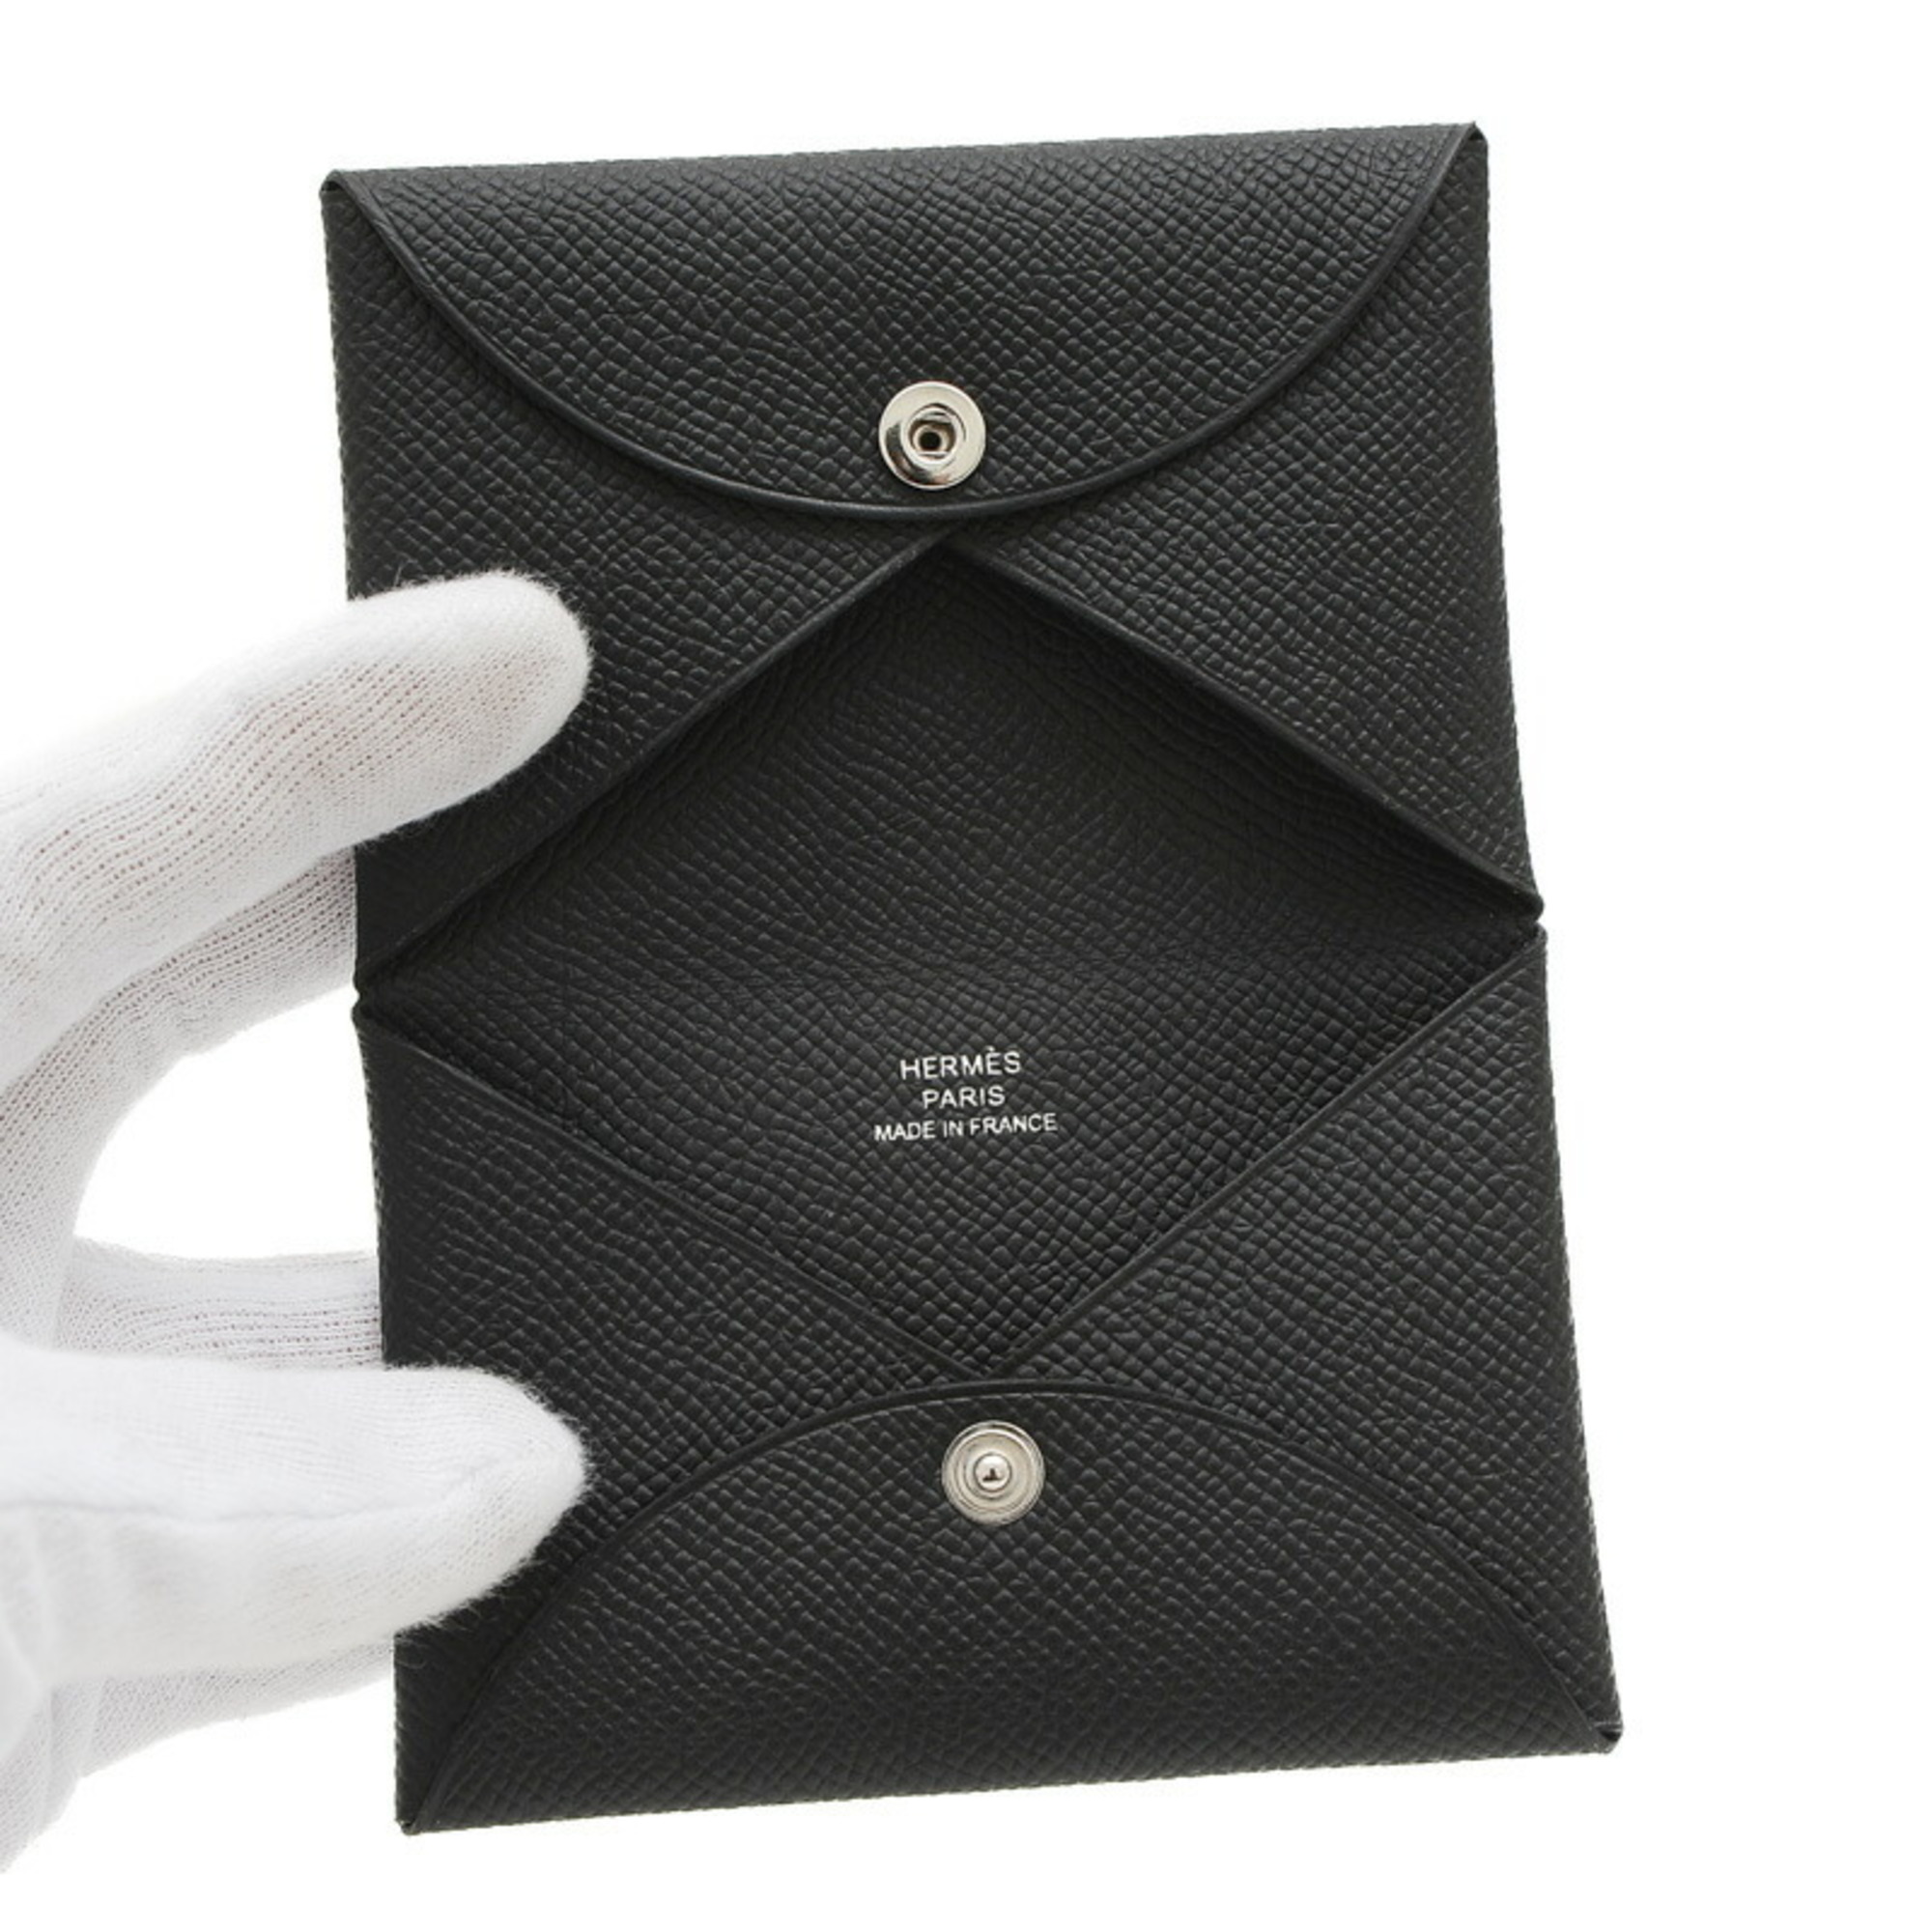 Hermes Calvi business card holder/card case Epson black B engraved